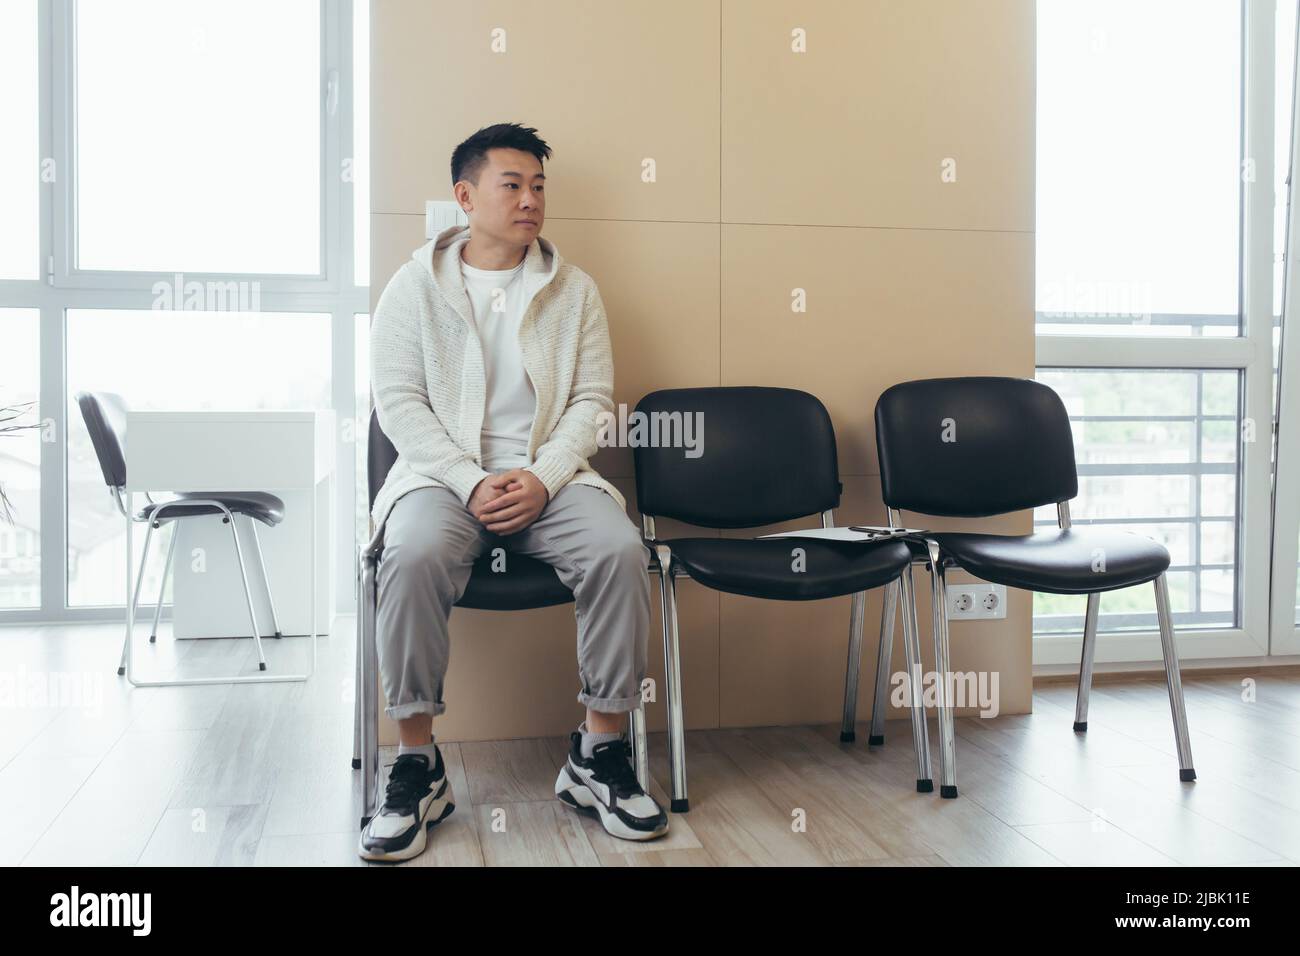 jeune asiatique attendant une entrevue ou une réunion dans le couloir de la salle d'attente. Étudiant ou participant à la réception pour examen ou emploi Banque D'Images